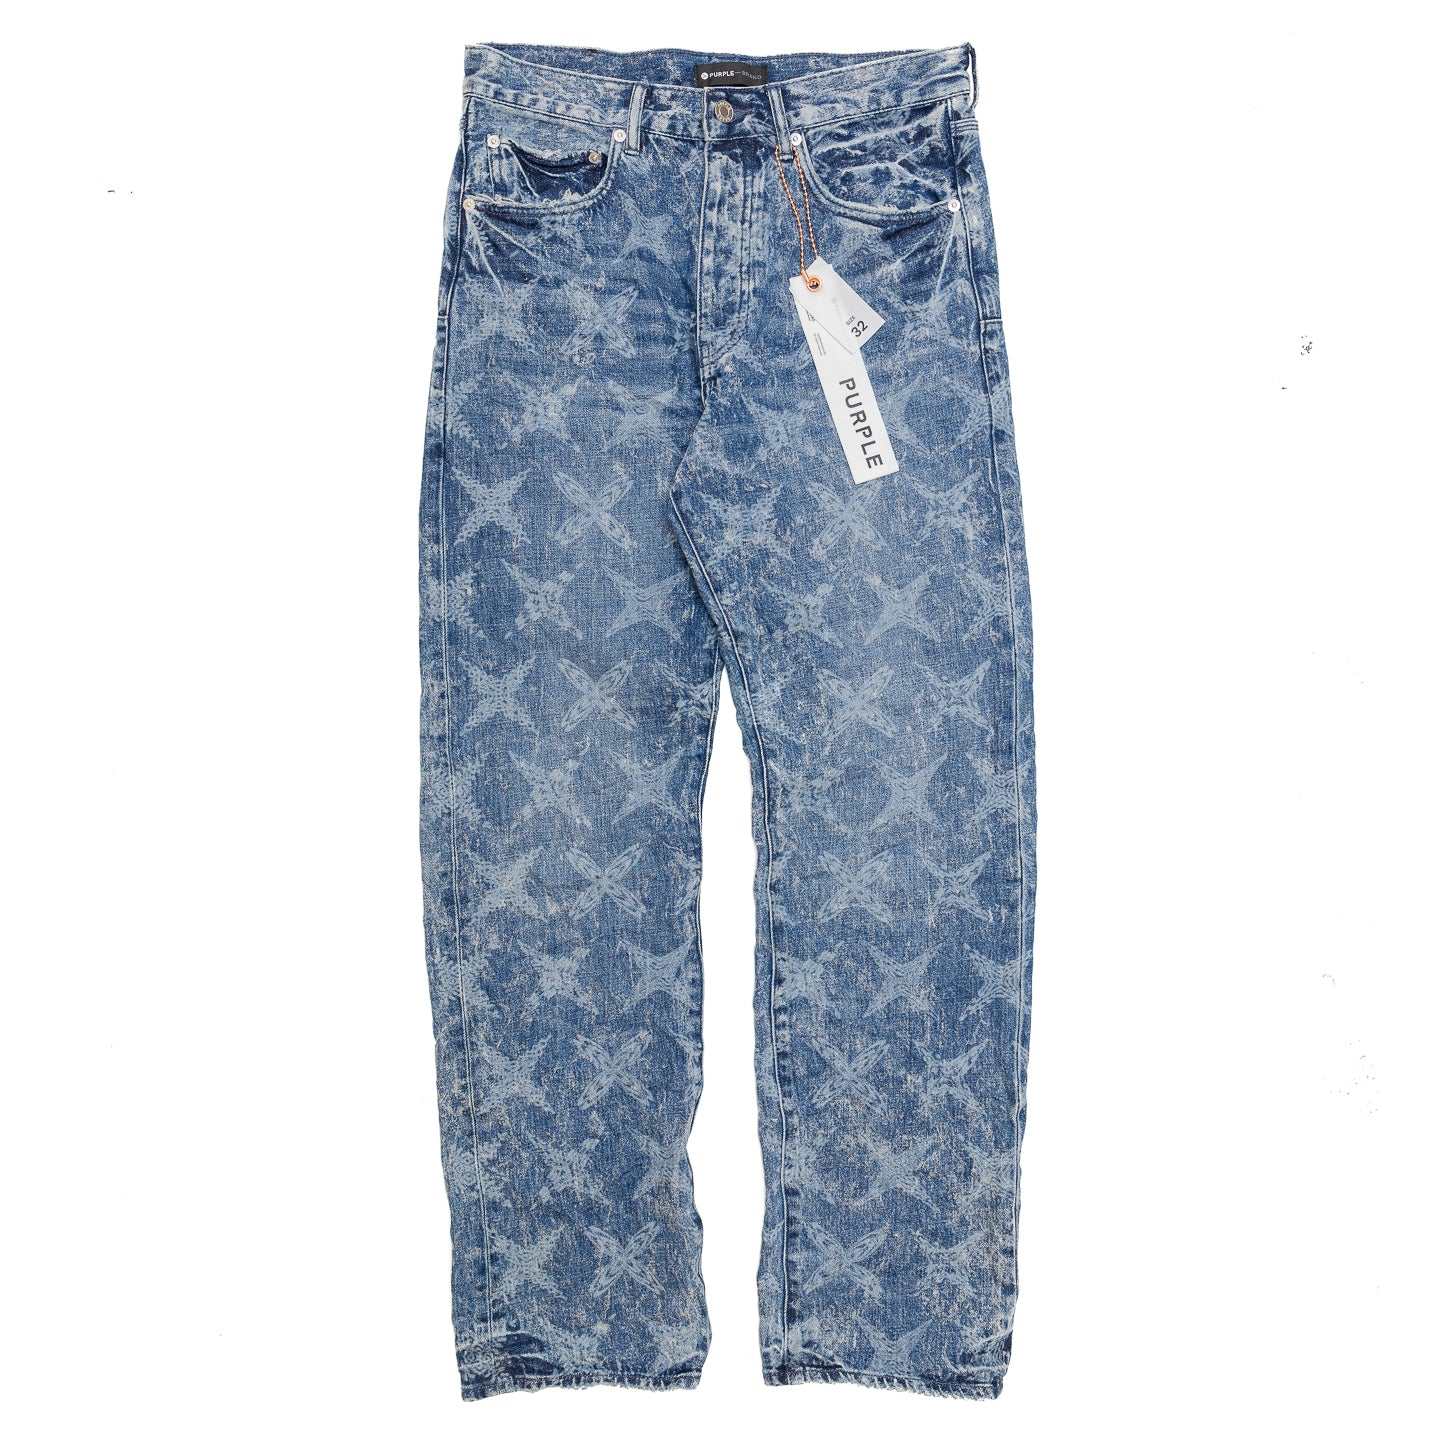 PURPLE Brand P011 Mid Indigo Galaxy Jeans